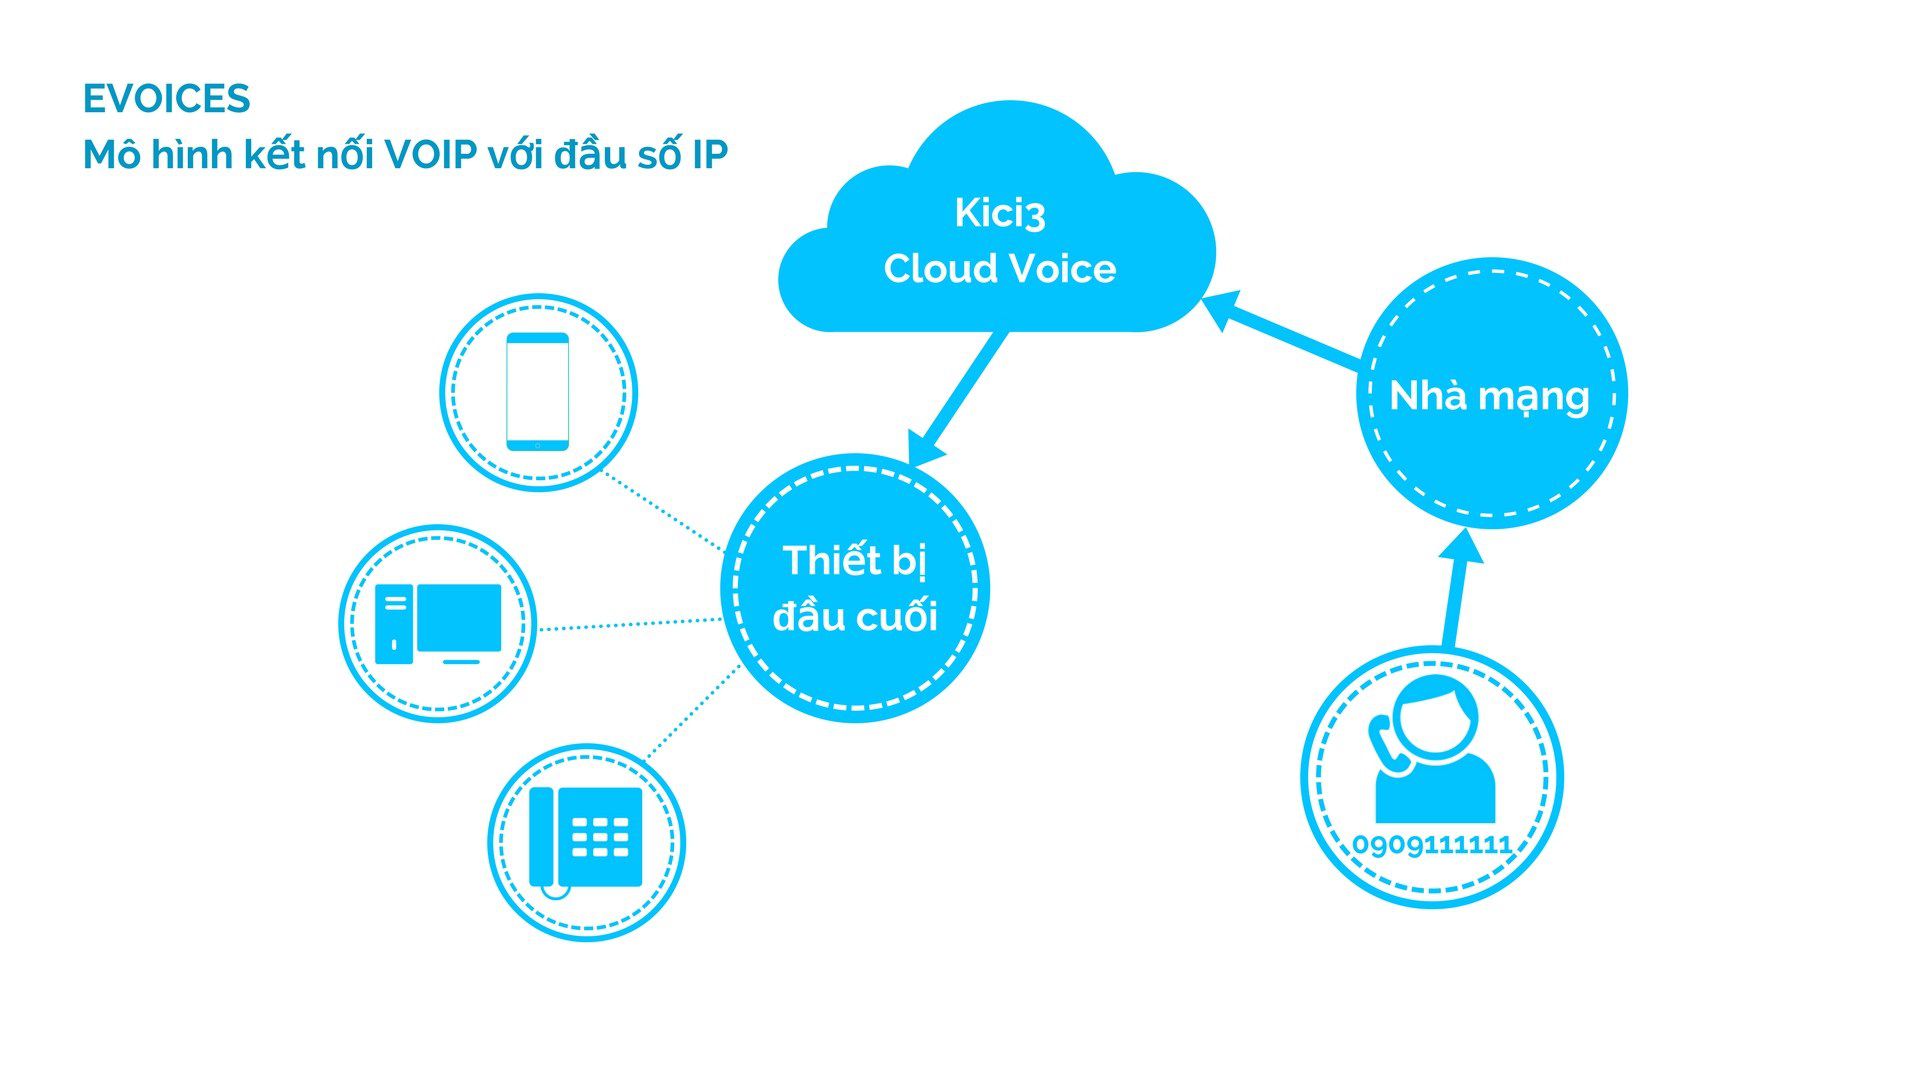 Kici3 Evoices kết nối đầu số IP